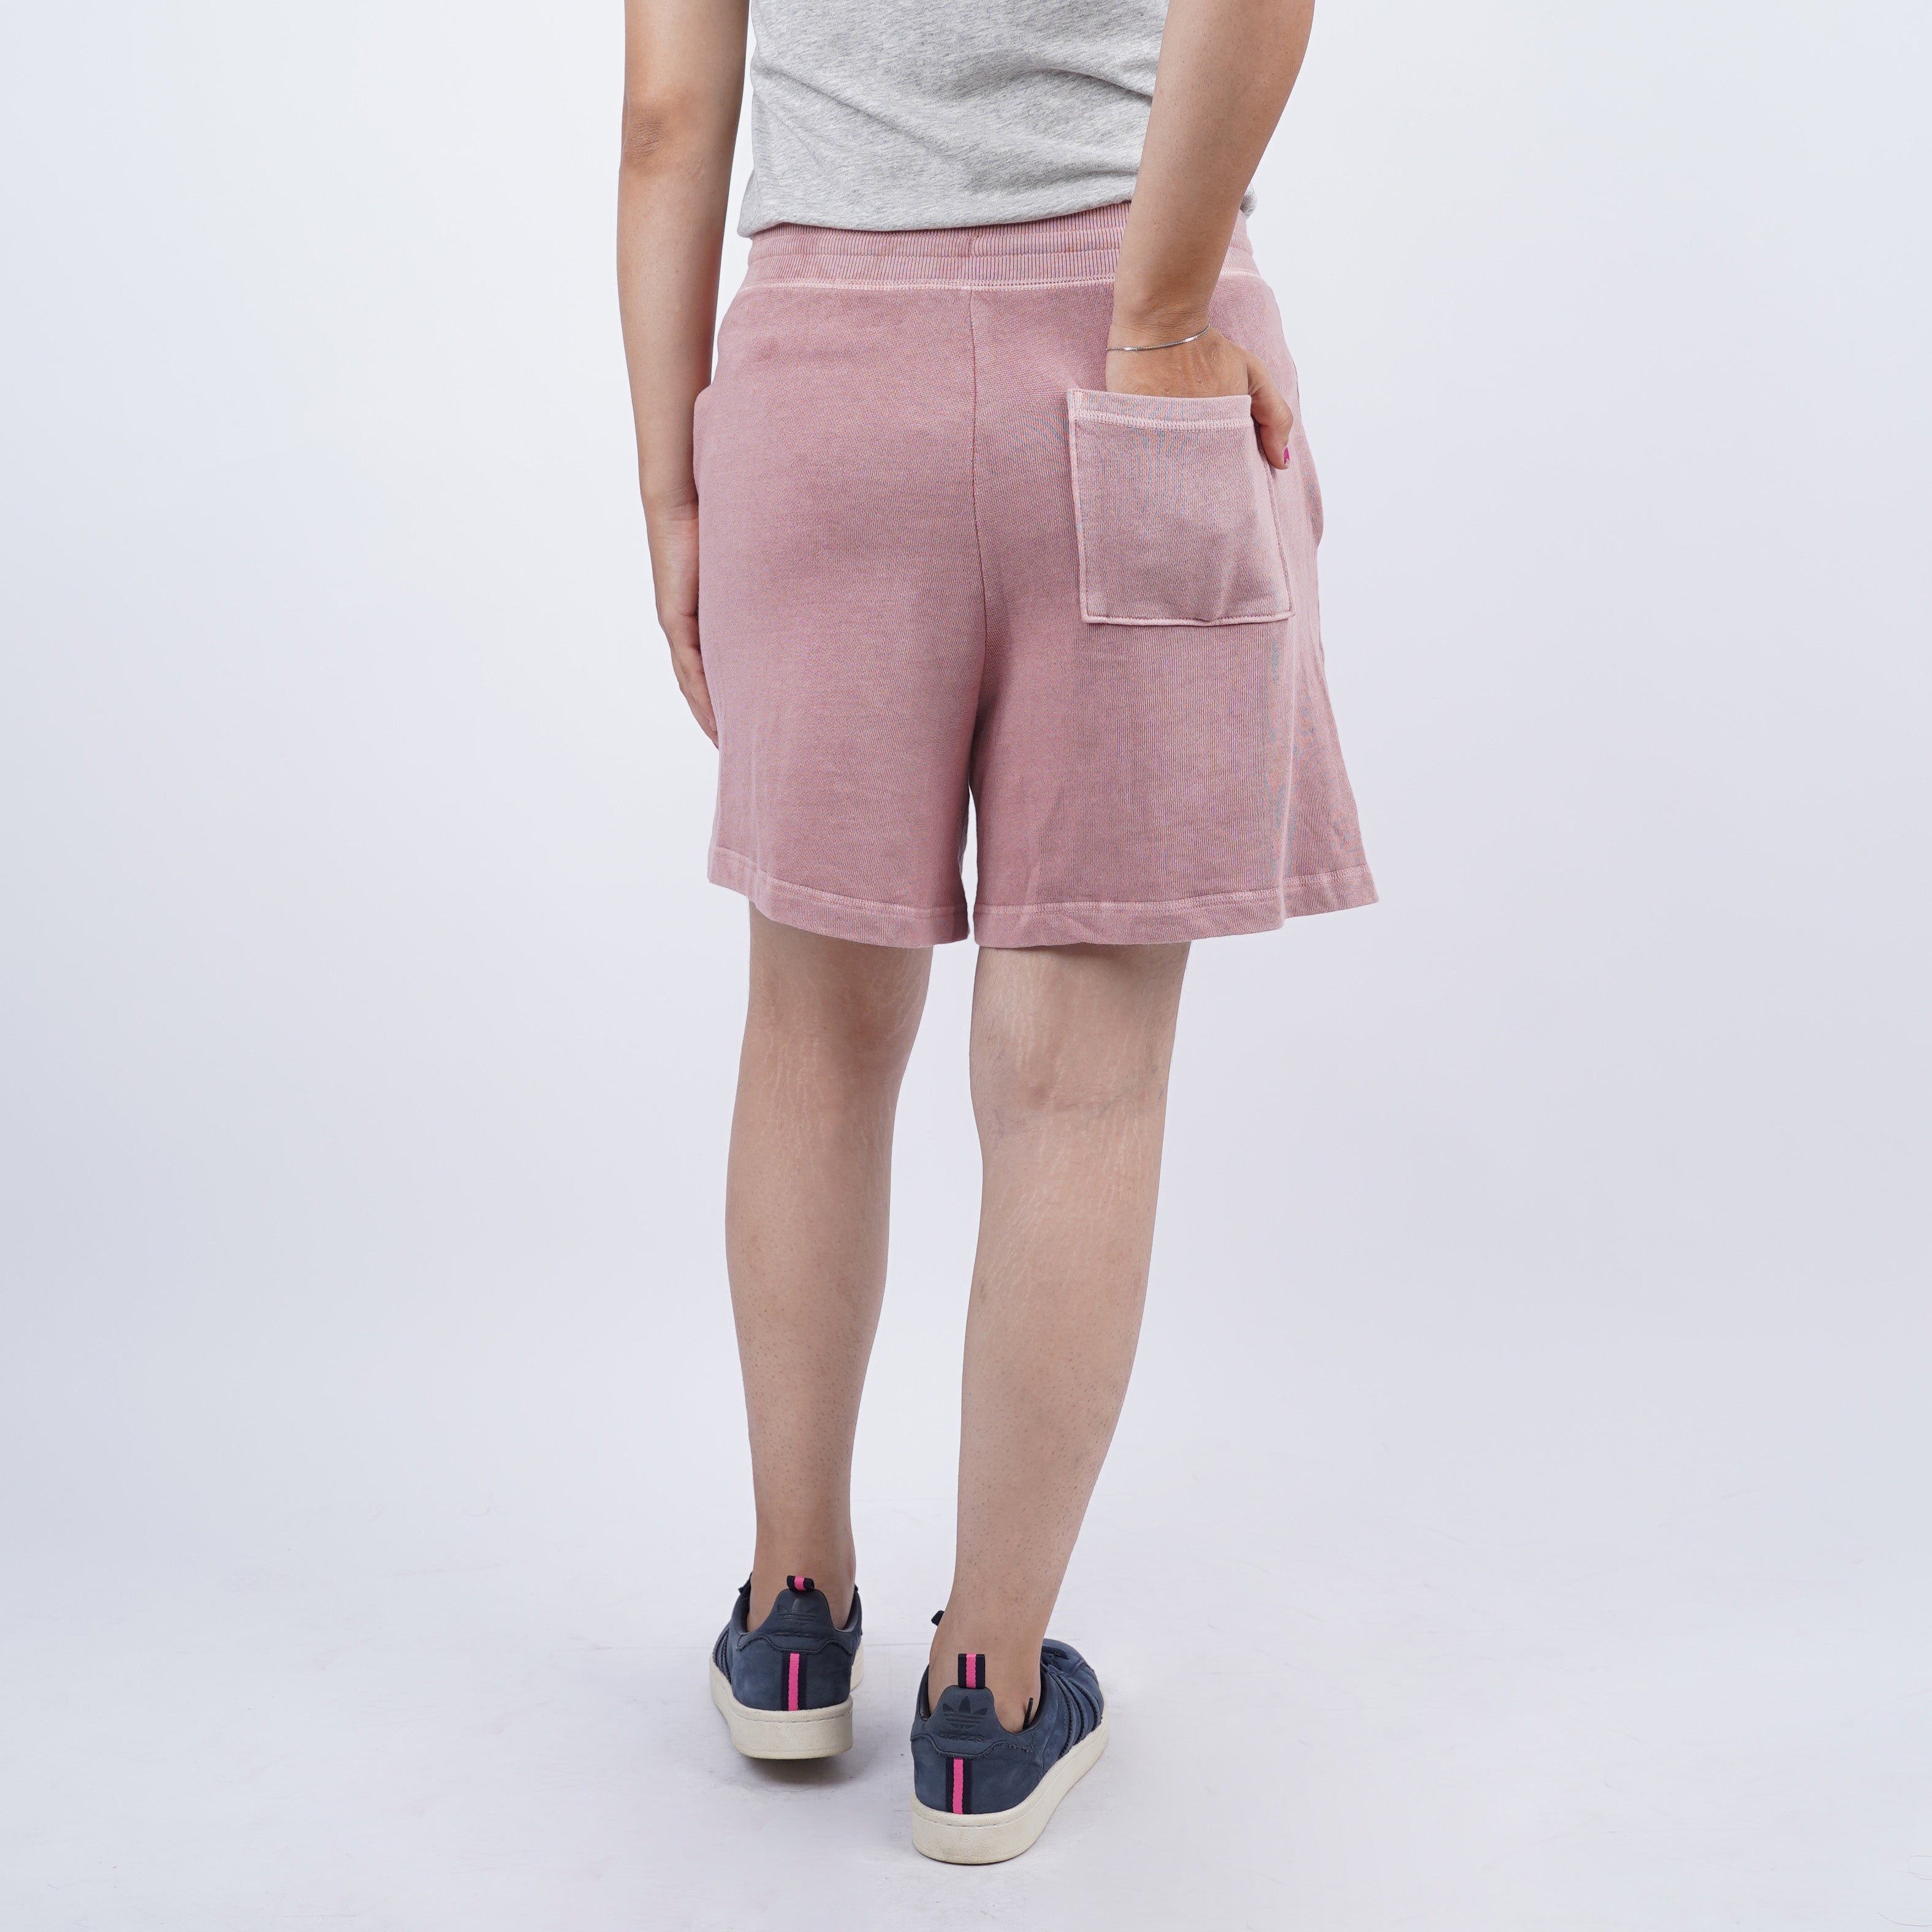 Celana Pendek Wanita tersedia 6 Warna [CG-ONS 10]